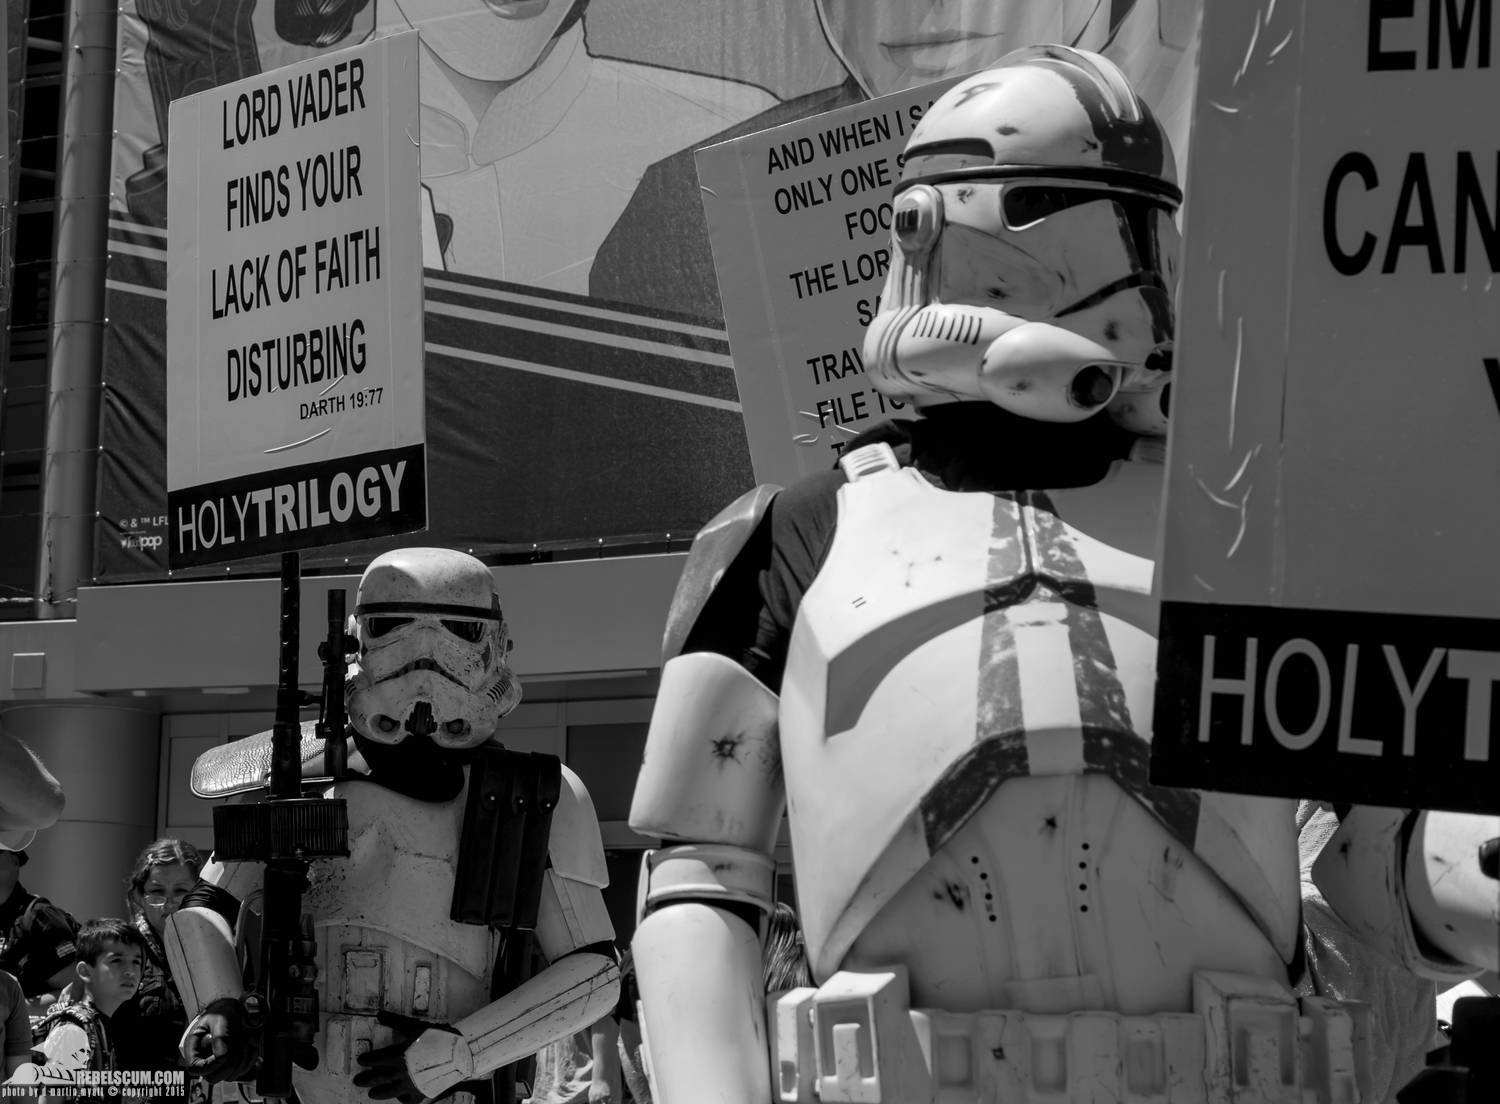 Star-Wars-Celebration-Anaheim-2015-Cosplay-costumes-033.jpg